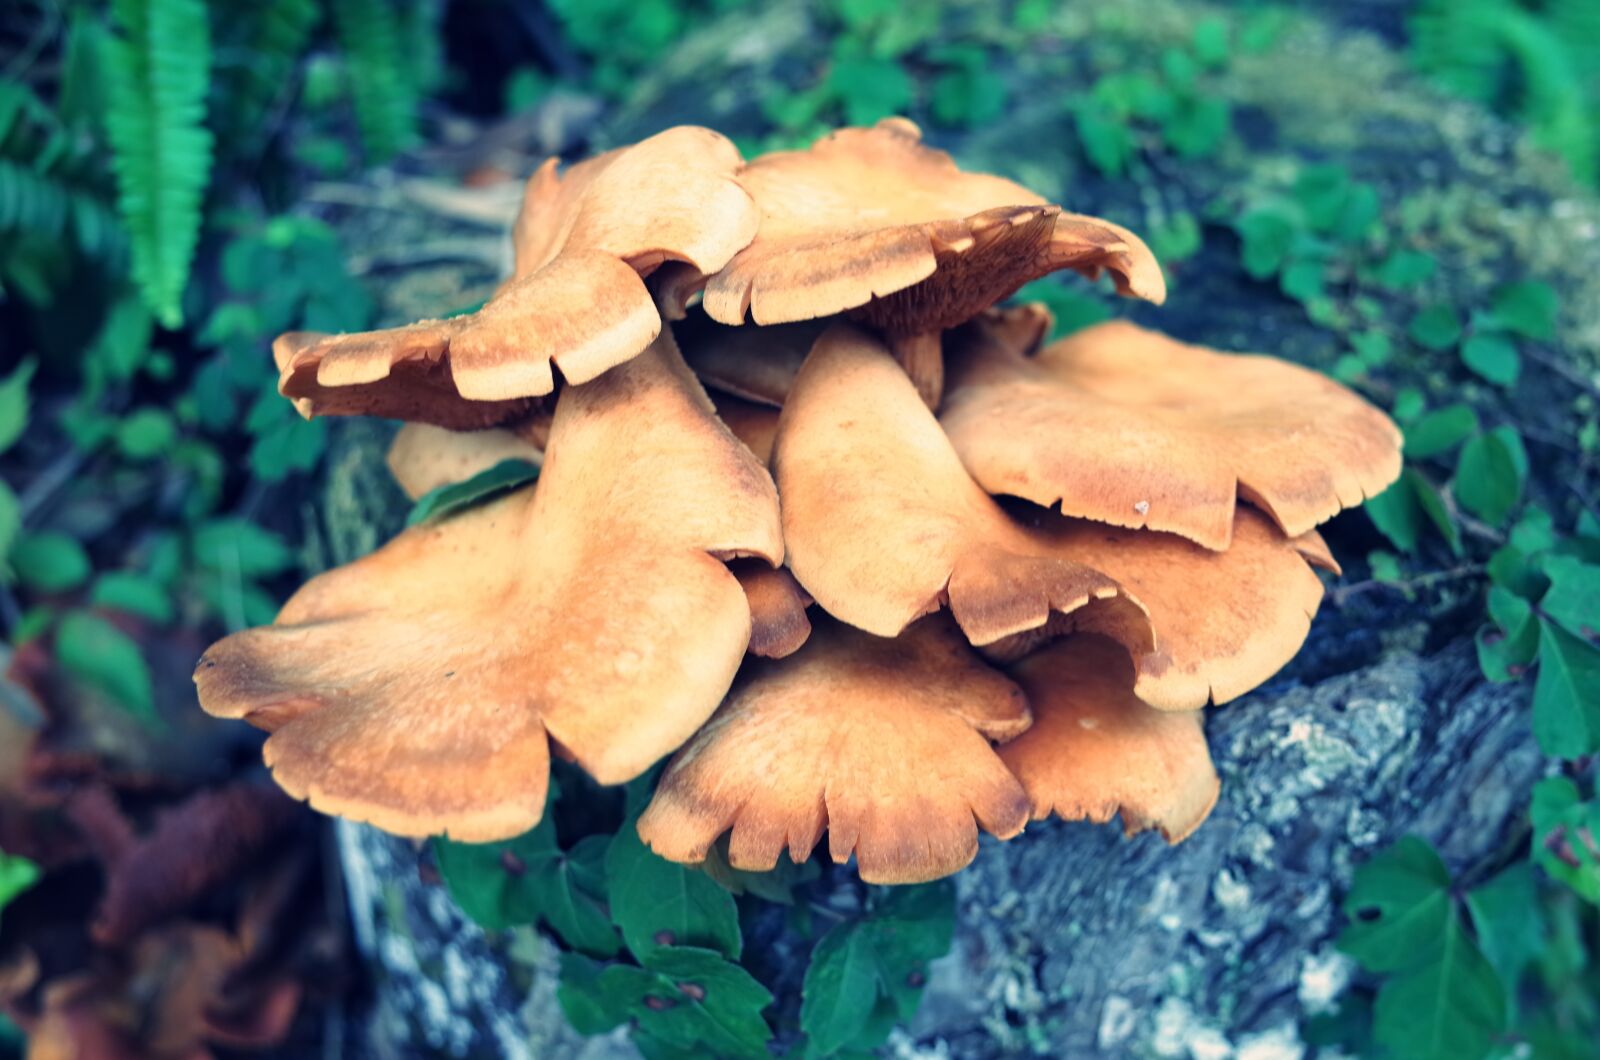 Ricoh GR + GR Lens sample photo. Mushroom, mushrooms, shiitake mushroom photography